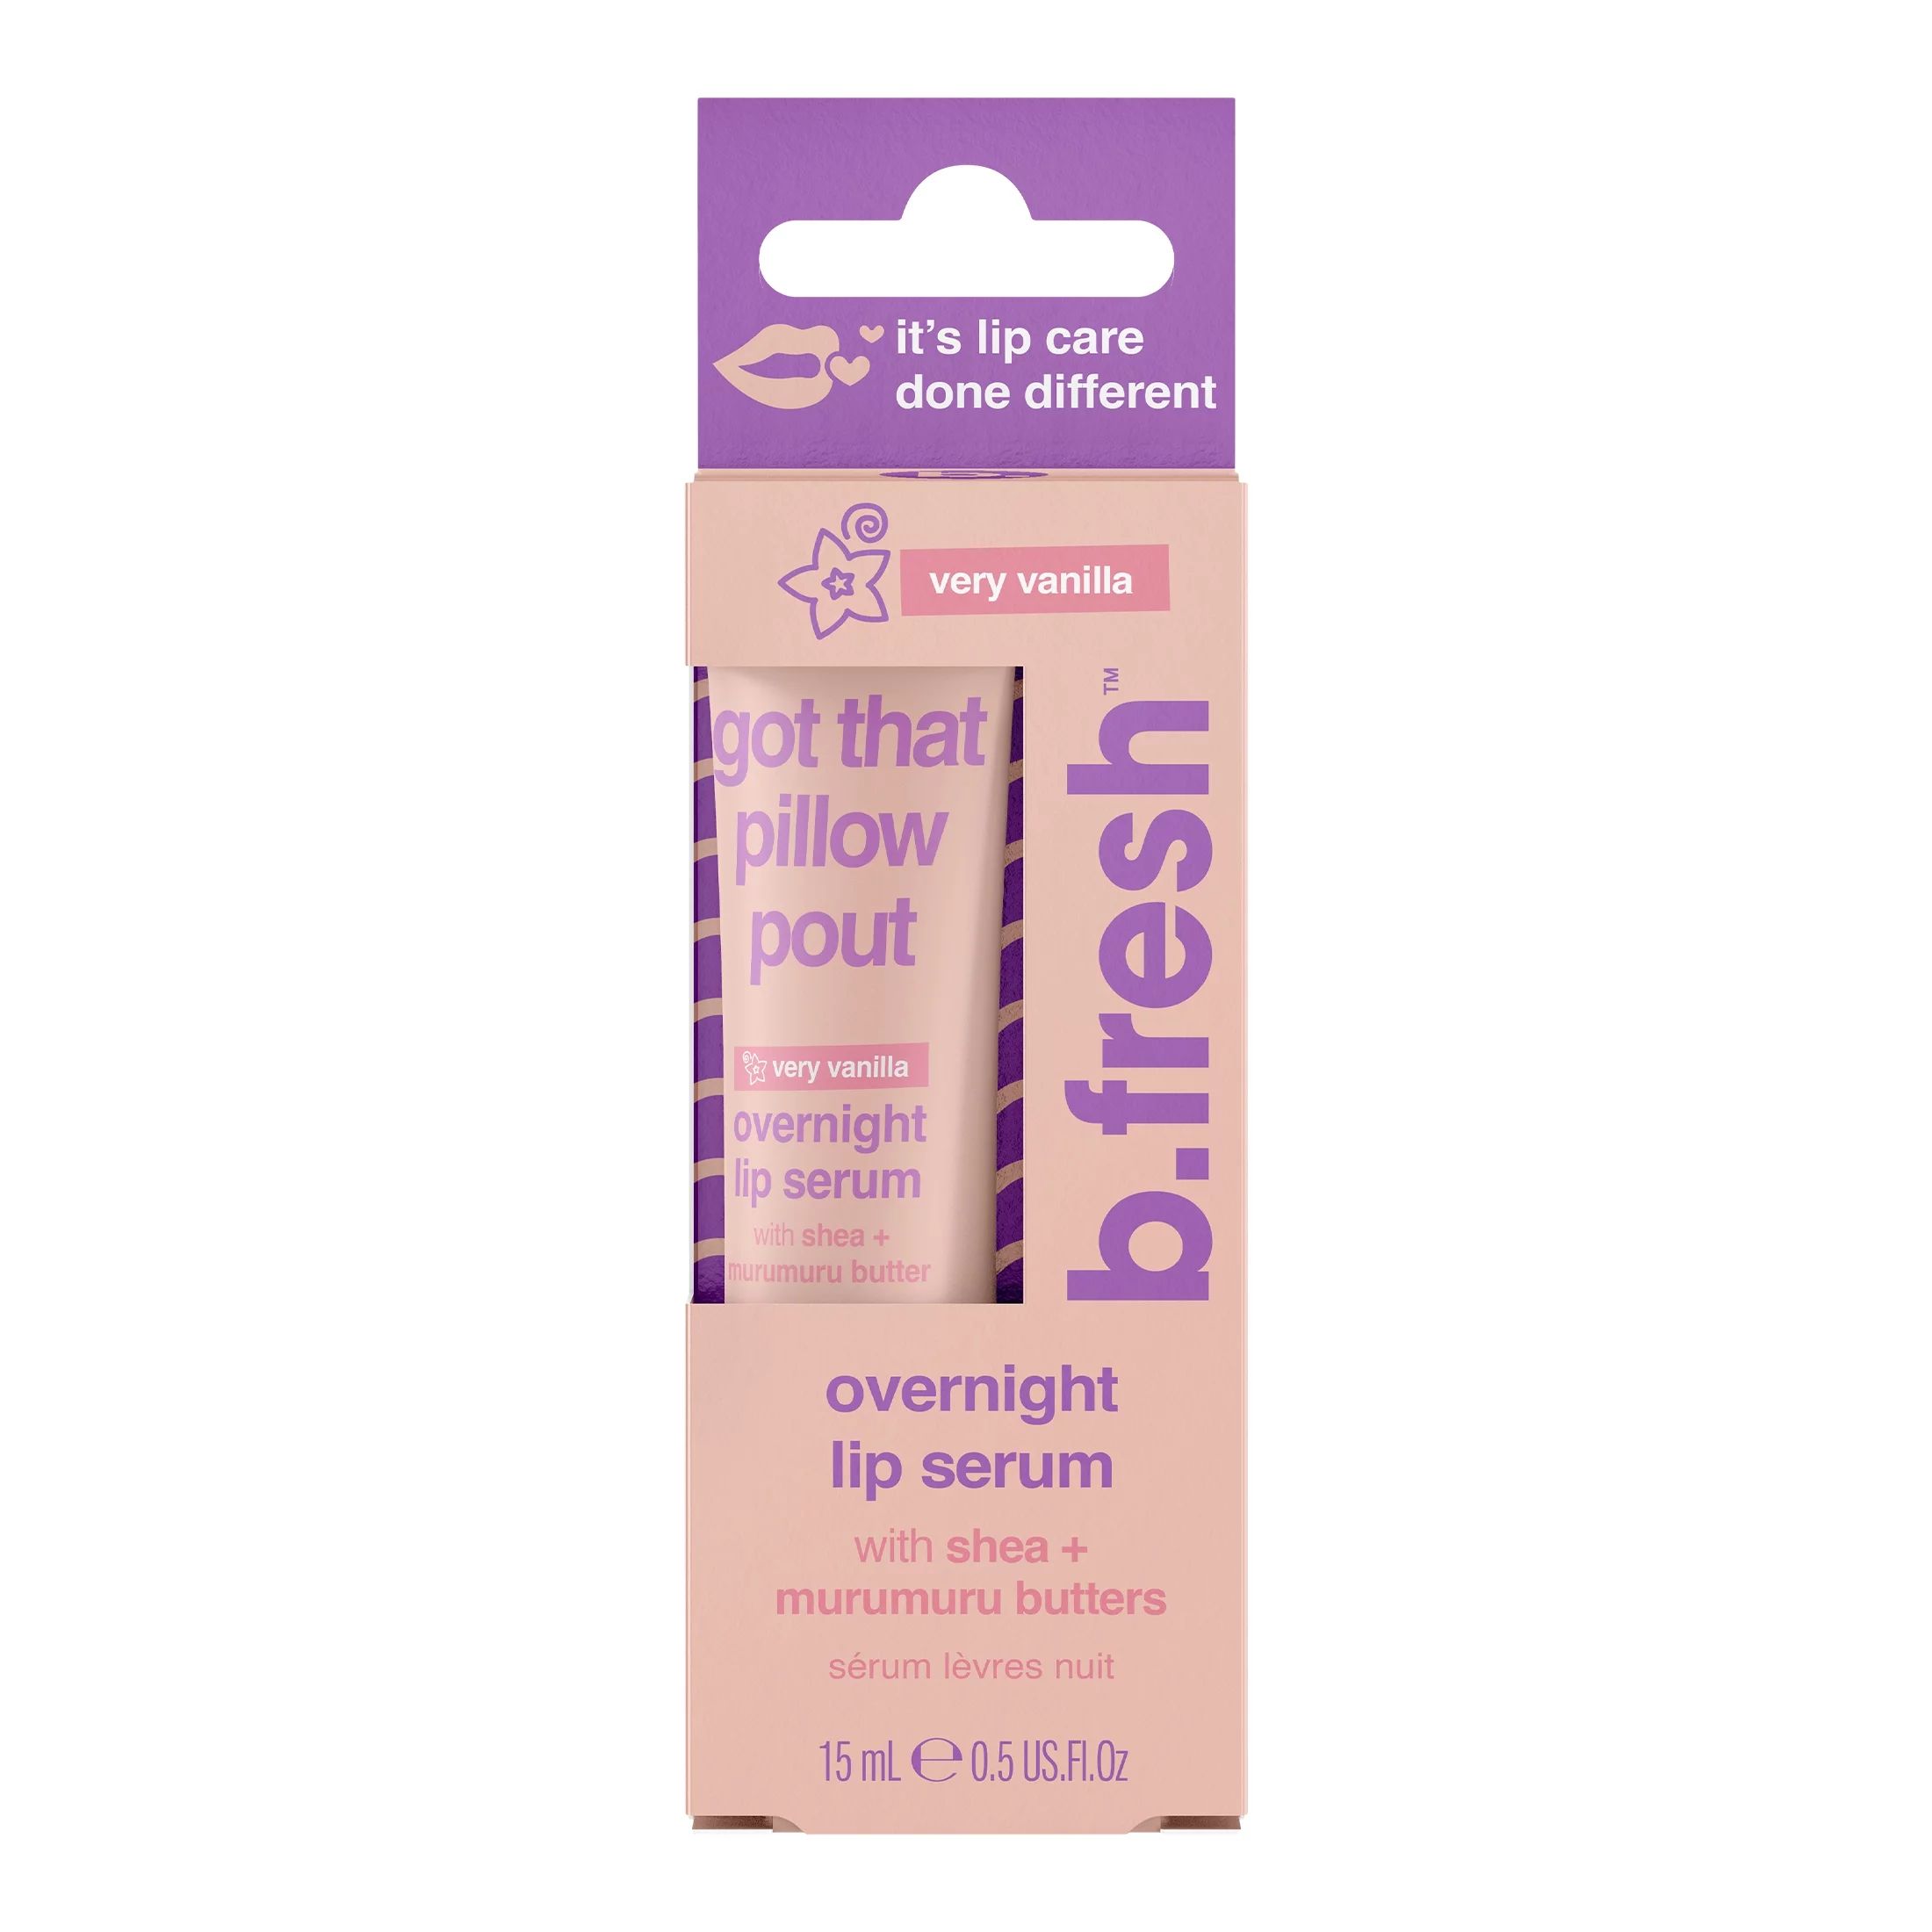 b.fresh got that pillow pout - lip serum 0.5 fl oz | Walmart (US)